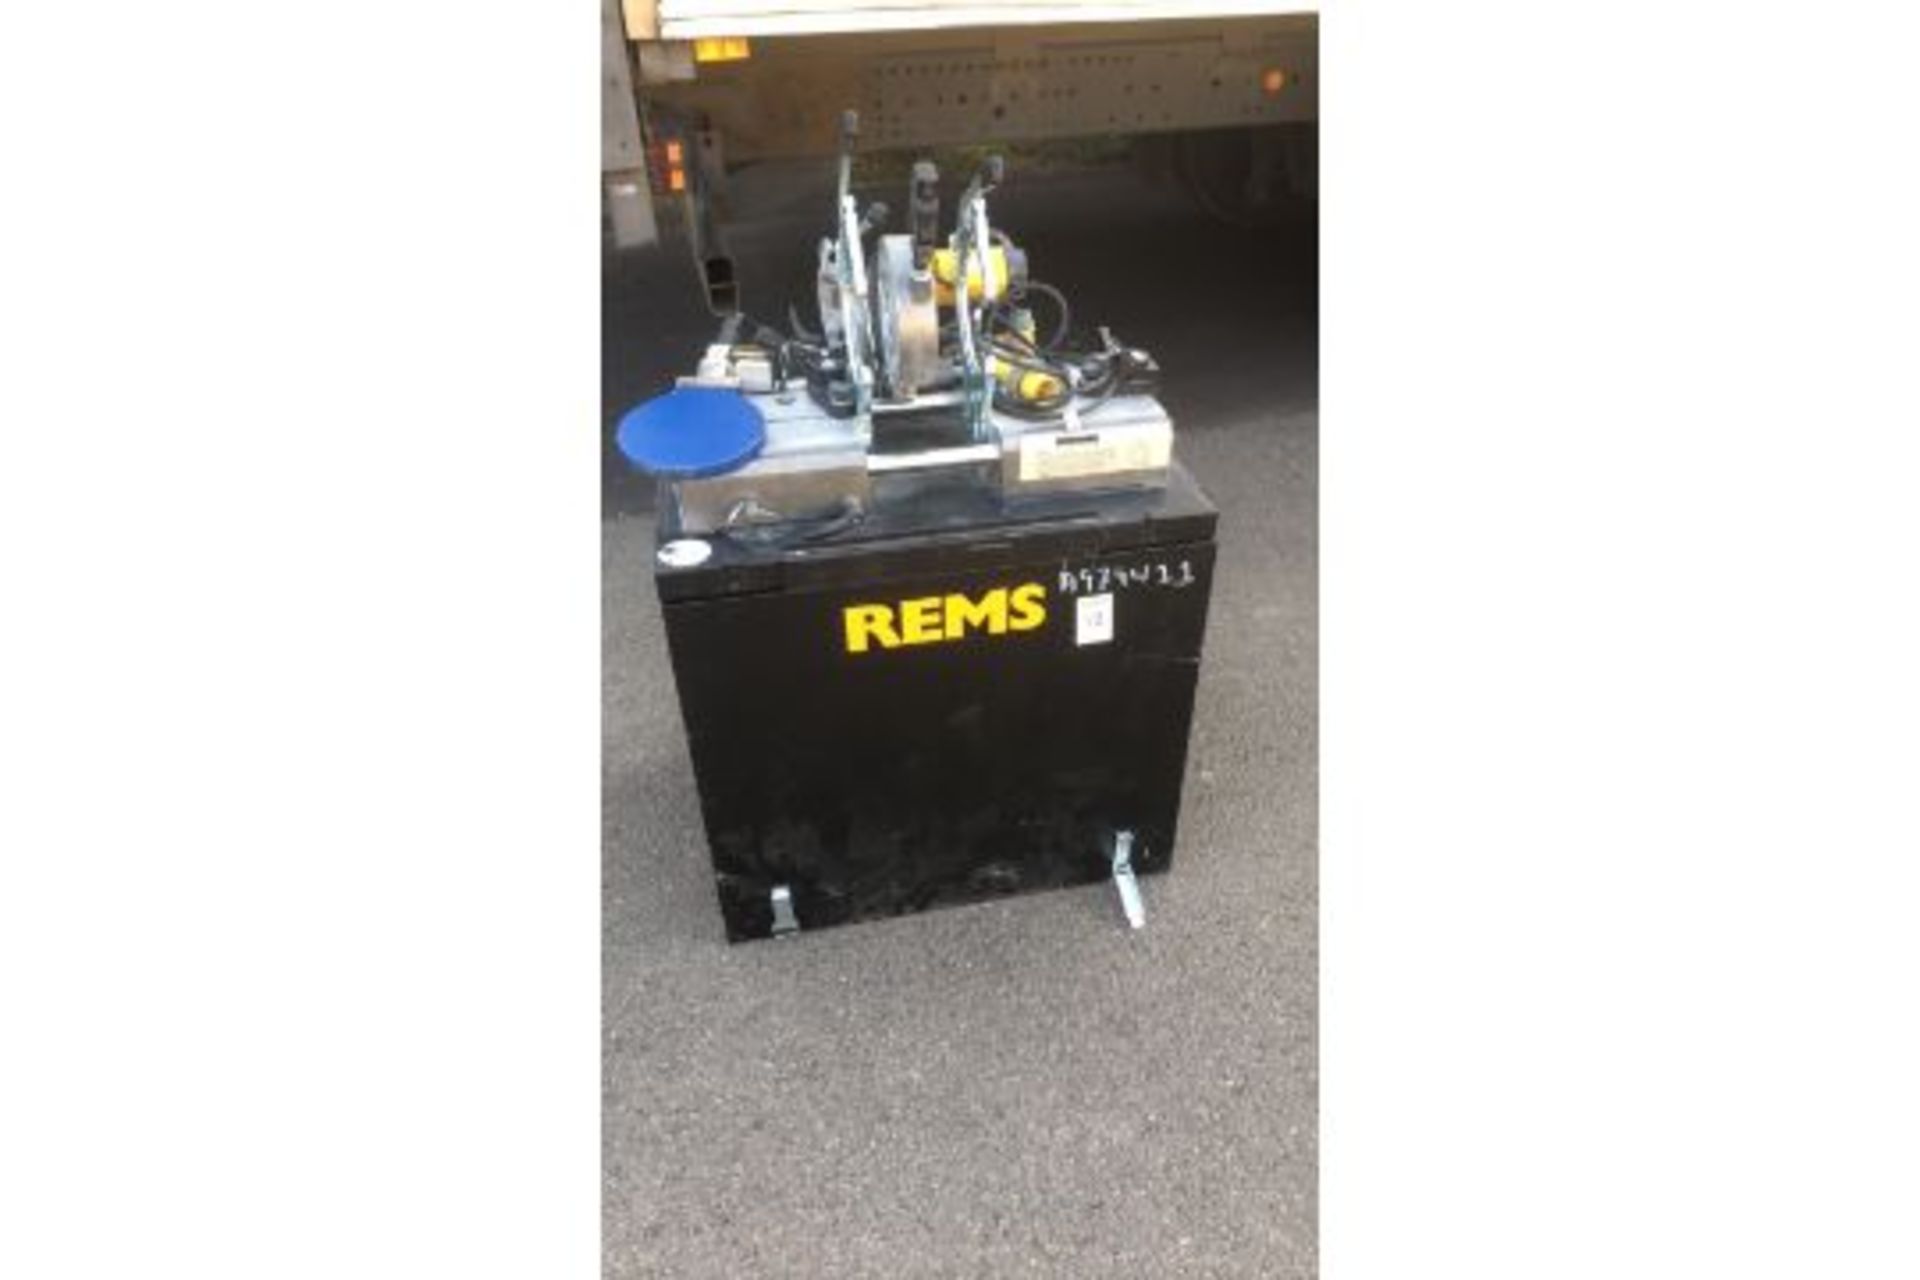 REMS SSM 160 KS butt welding machine in vgc (A979411)